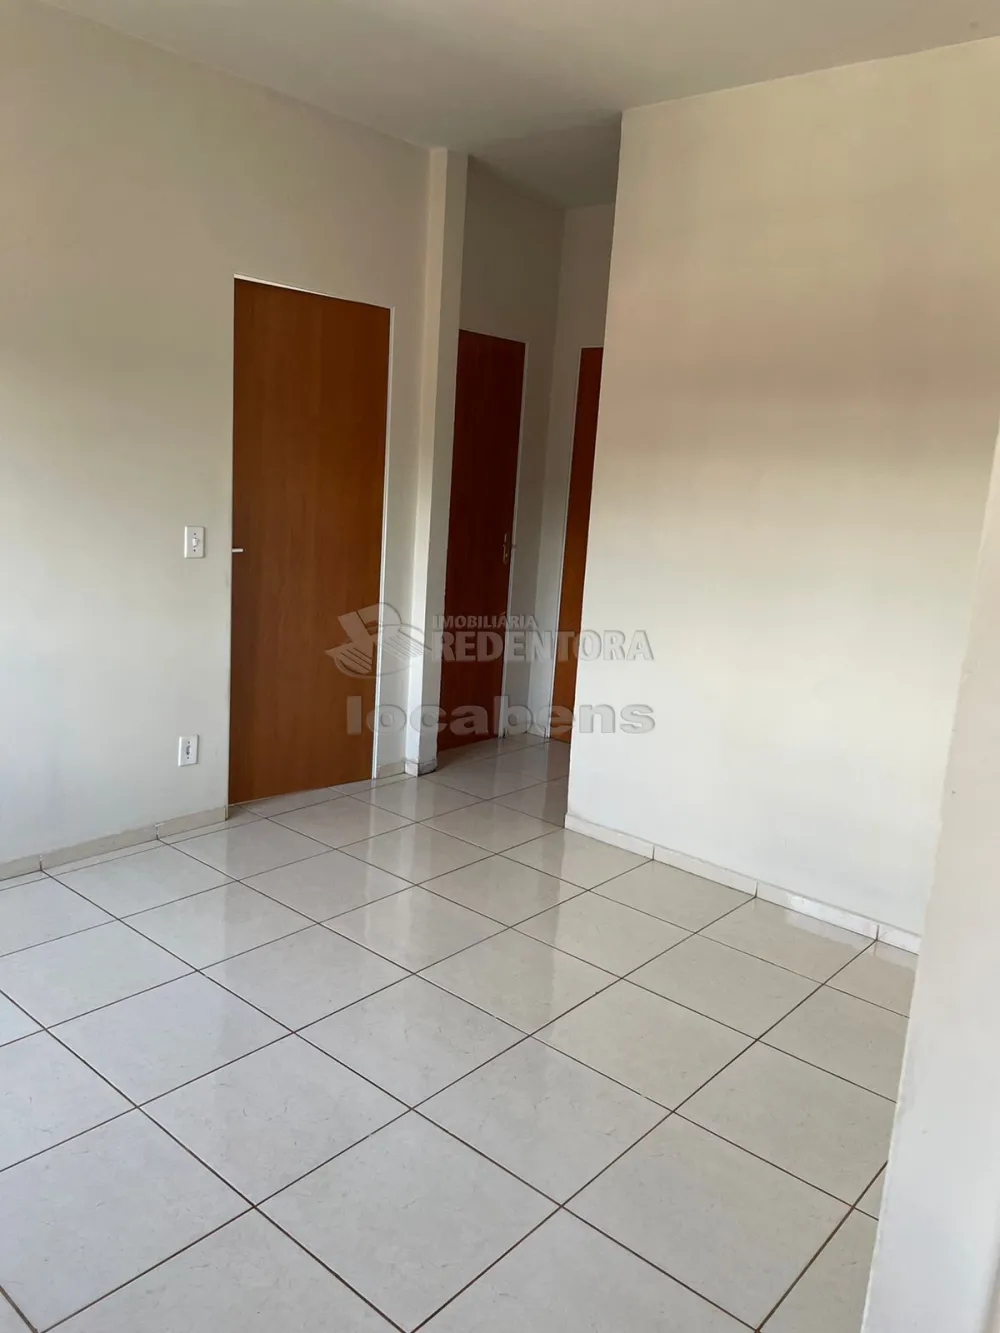 Comprar Apartamento / Padrão em José Bonifácio R$ 120.000,00 - Foto 1